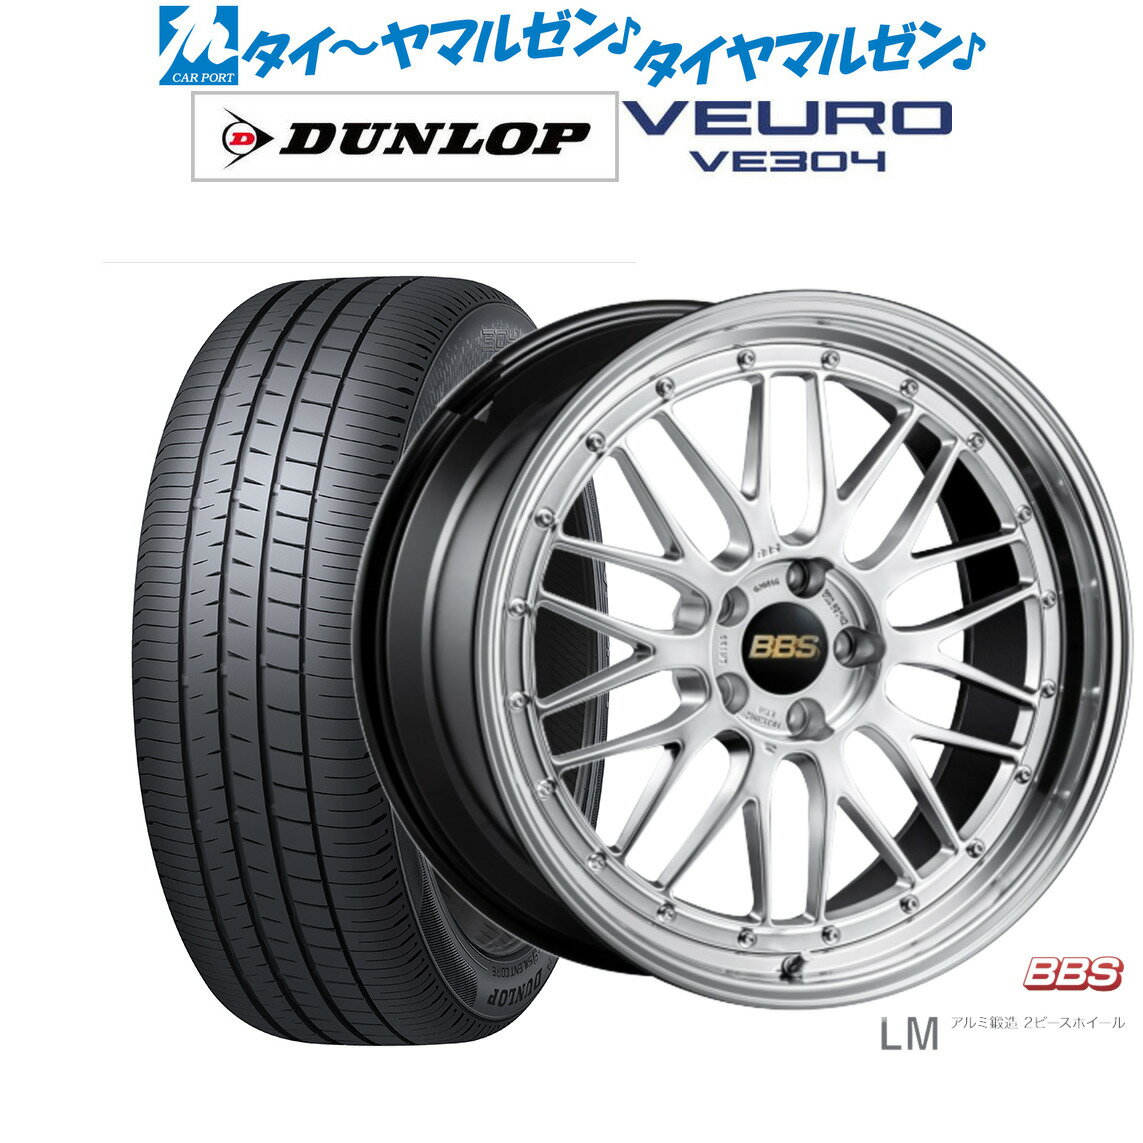 新品 サマータイヤ ホイール4本セットBBS JAPAN LM19インチ 8.5Jダンロップ VEURO ビューロ VE304225/55R19